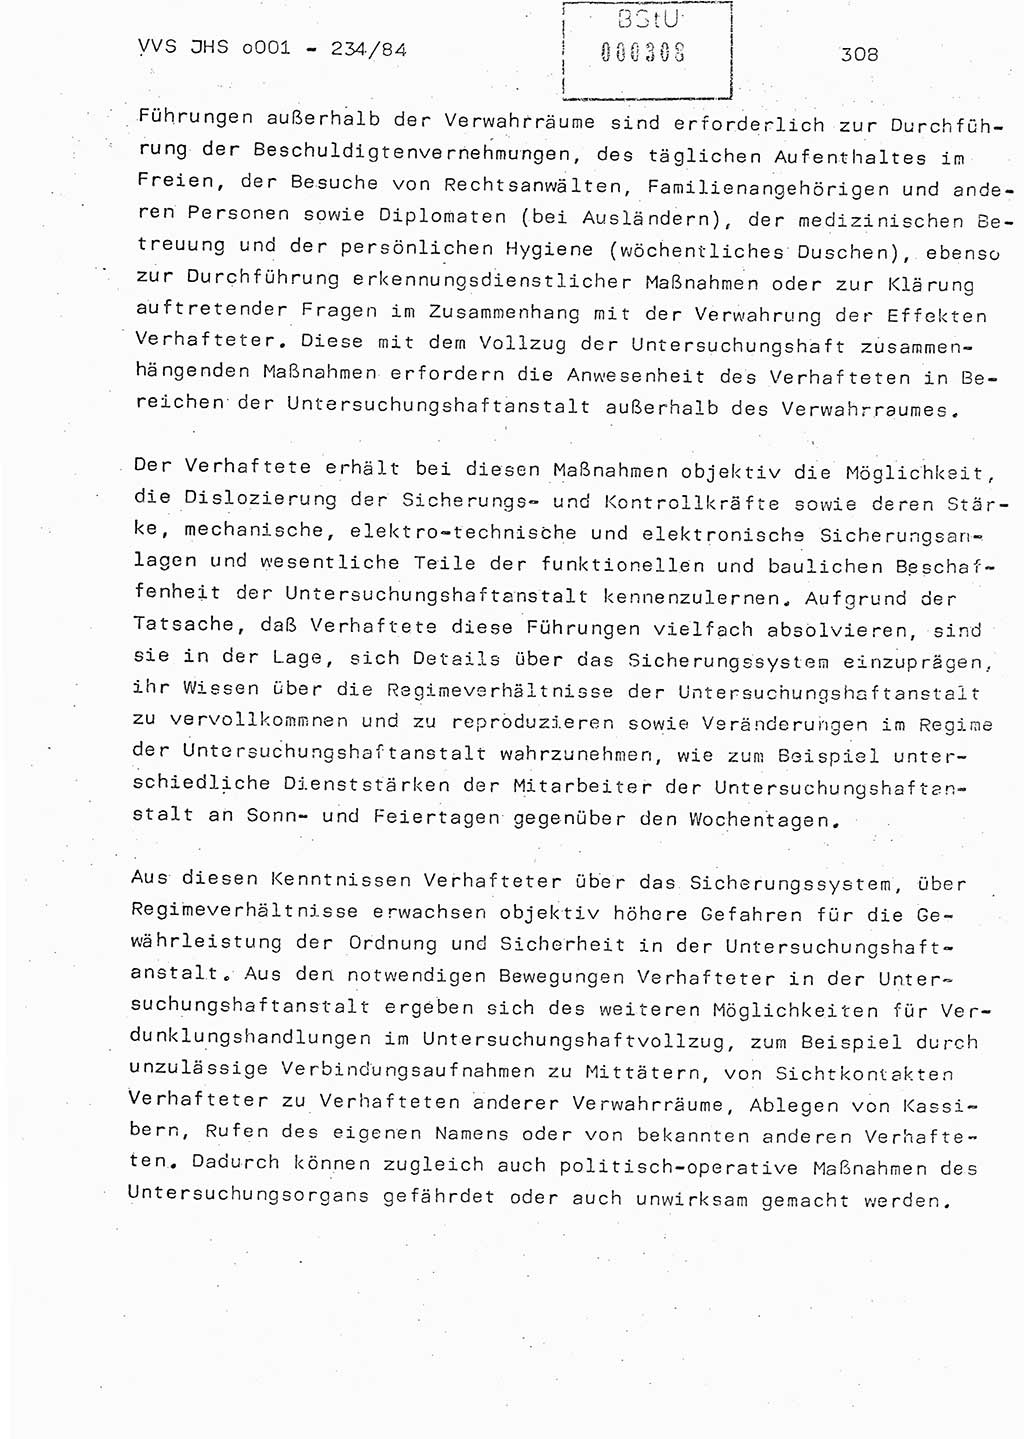 Dissertation Oberst Siegfried Rataizick (Abt. ⅩⅣ), Oberstleutnant Volkmar Heinz (Abt. ⅩⅣ), Oberstleutnant Werner Stein (HA Ⅸ), Hauptmann Heinz Conrad (JHS), Ministerium für Staatssicherheit (MfS) [Deutsche Demokratische Republik (DDR)], Juristische Hochschule (JHS), Vertrauliche Verschlußsache (VVS) o001-234/84, Potsdam 1984, Seite 308 (Diss. MfS DDR JHS VVS o001-234/84 1984, S. 308)